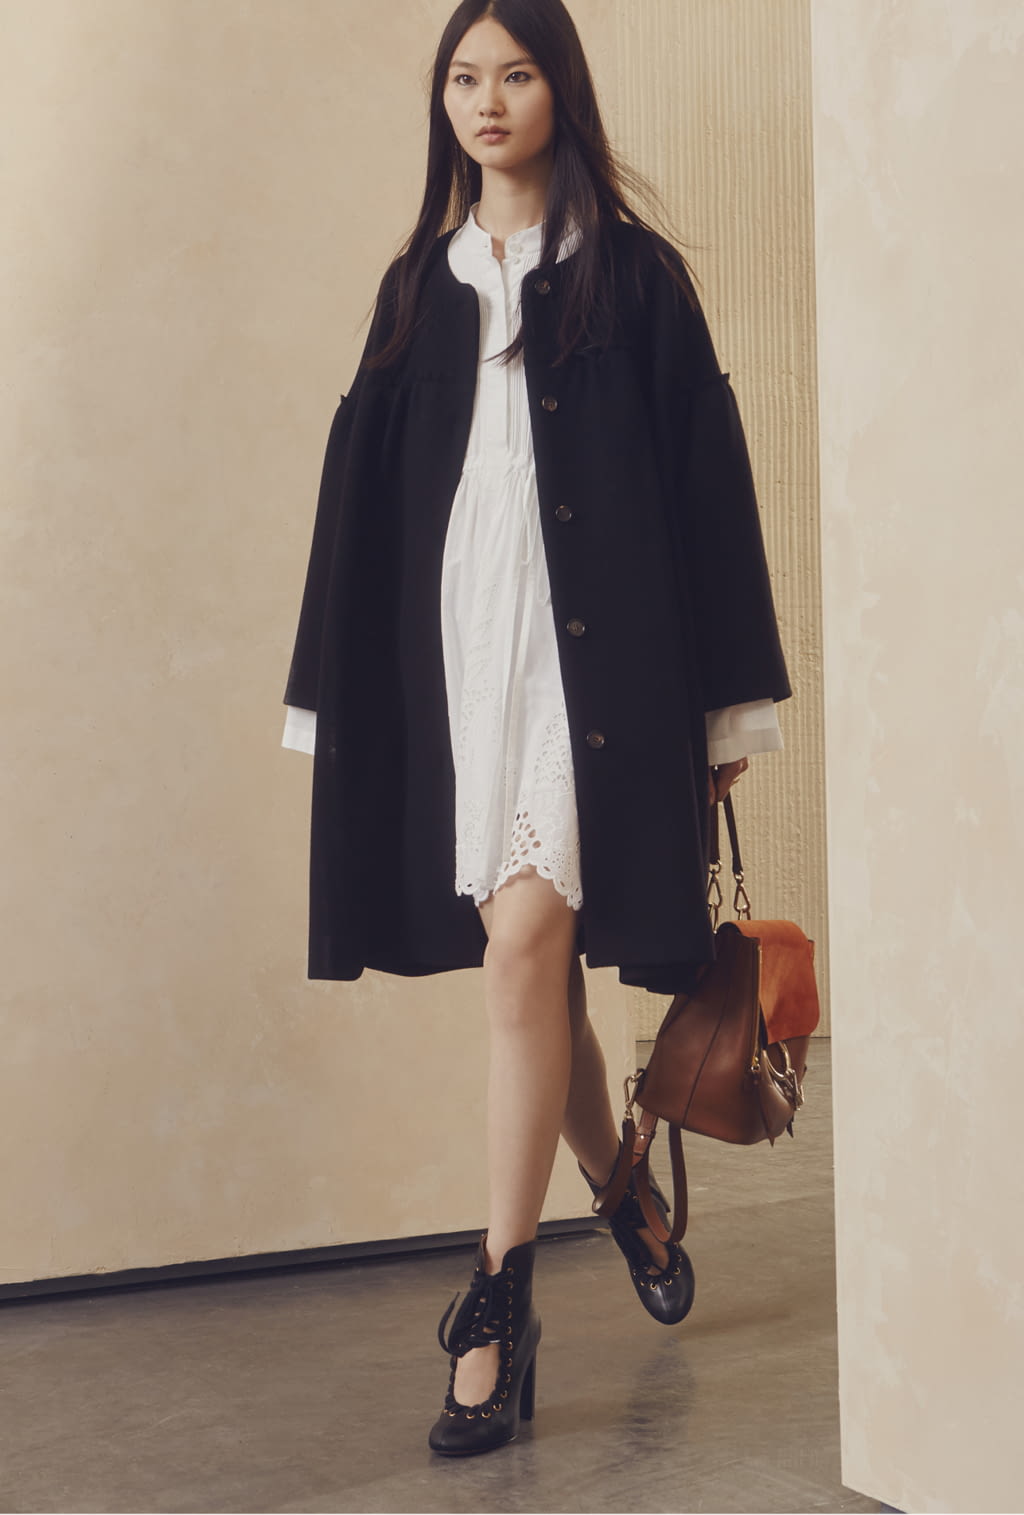 Chloé Resort 17 womenswear #16 - Tagwalk: The Fashion Search Engine